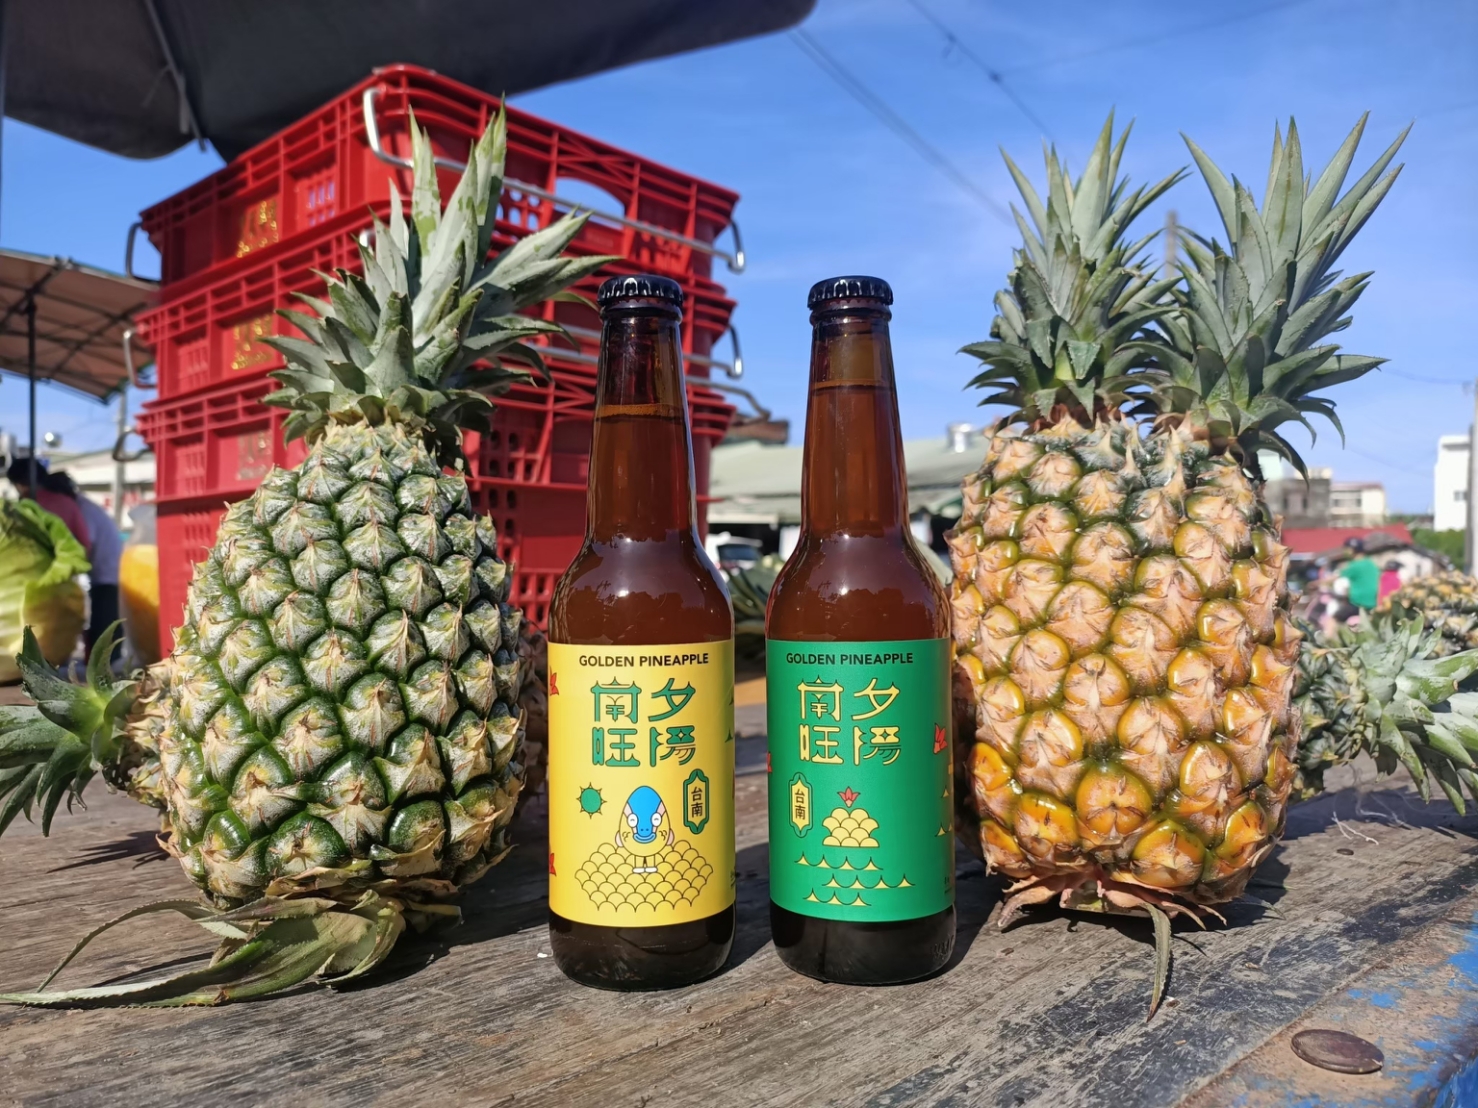 台南市觀光旅遊局今年與沃準釀造合作推出的限量台南聯名啤酒首款–「南旺夕陽」